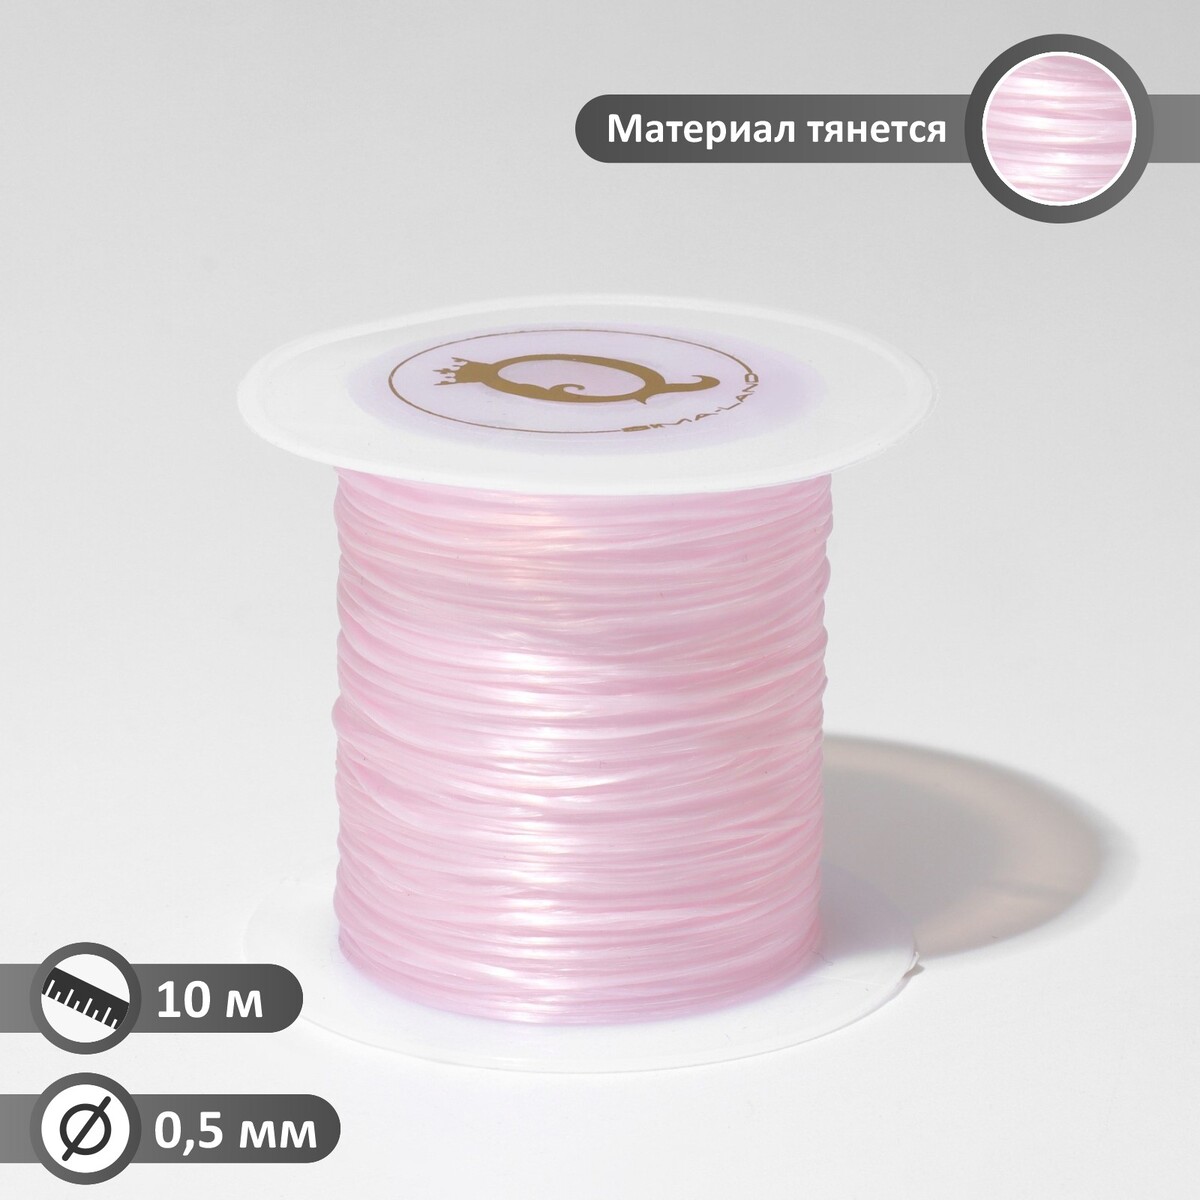 Нить силиконовая (резинка) d=0,5 мм, l=10 м (прочность 2250 денье), цвет светло-розовый нить силиконовая резинка d 0 5мм l 10м прочность 2250 денье темно зеленый